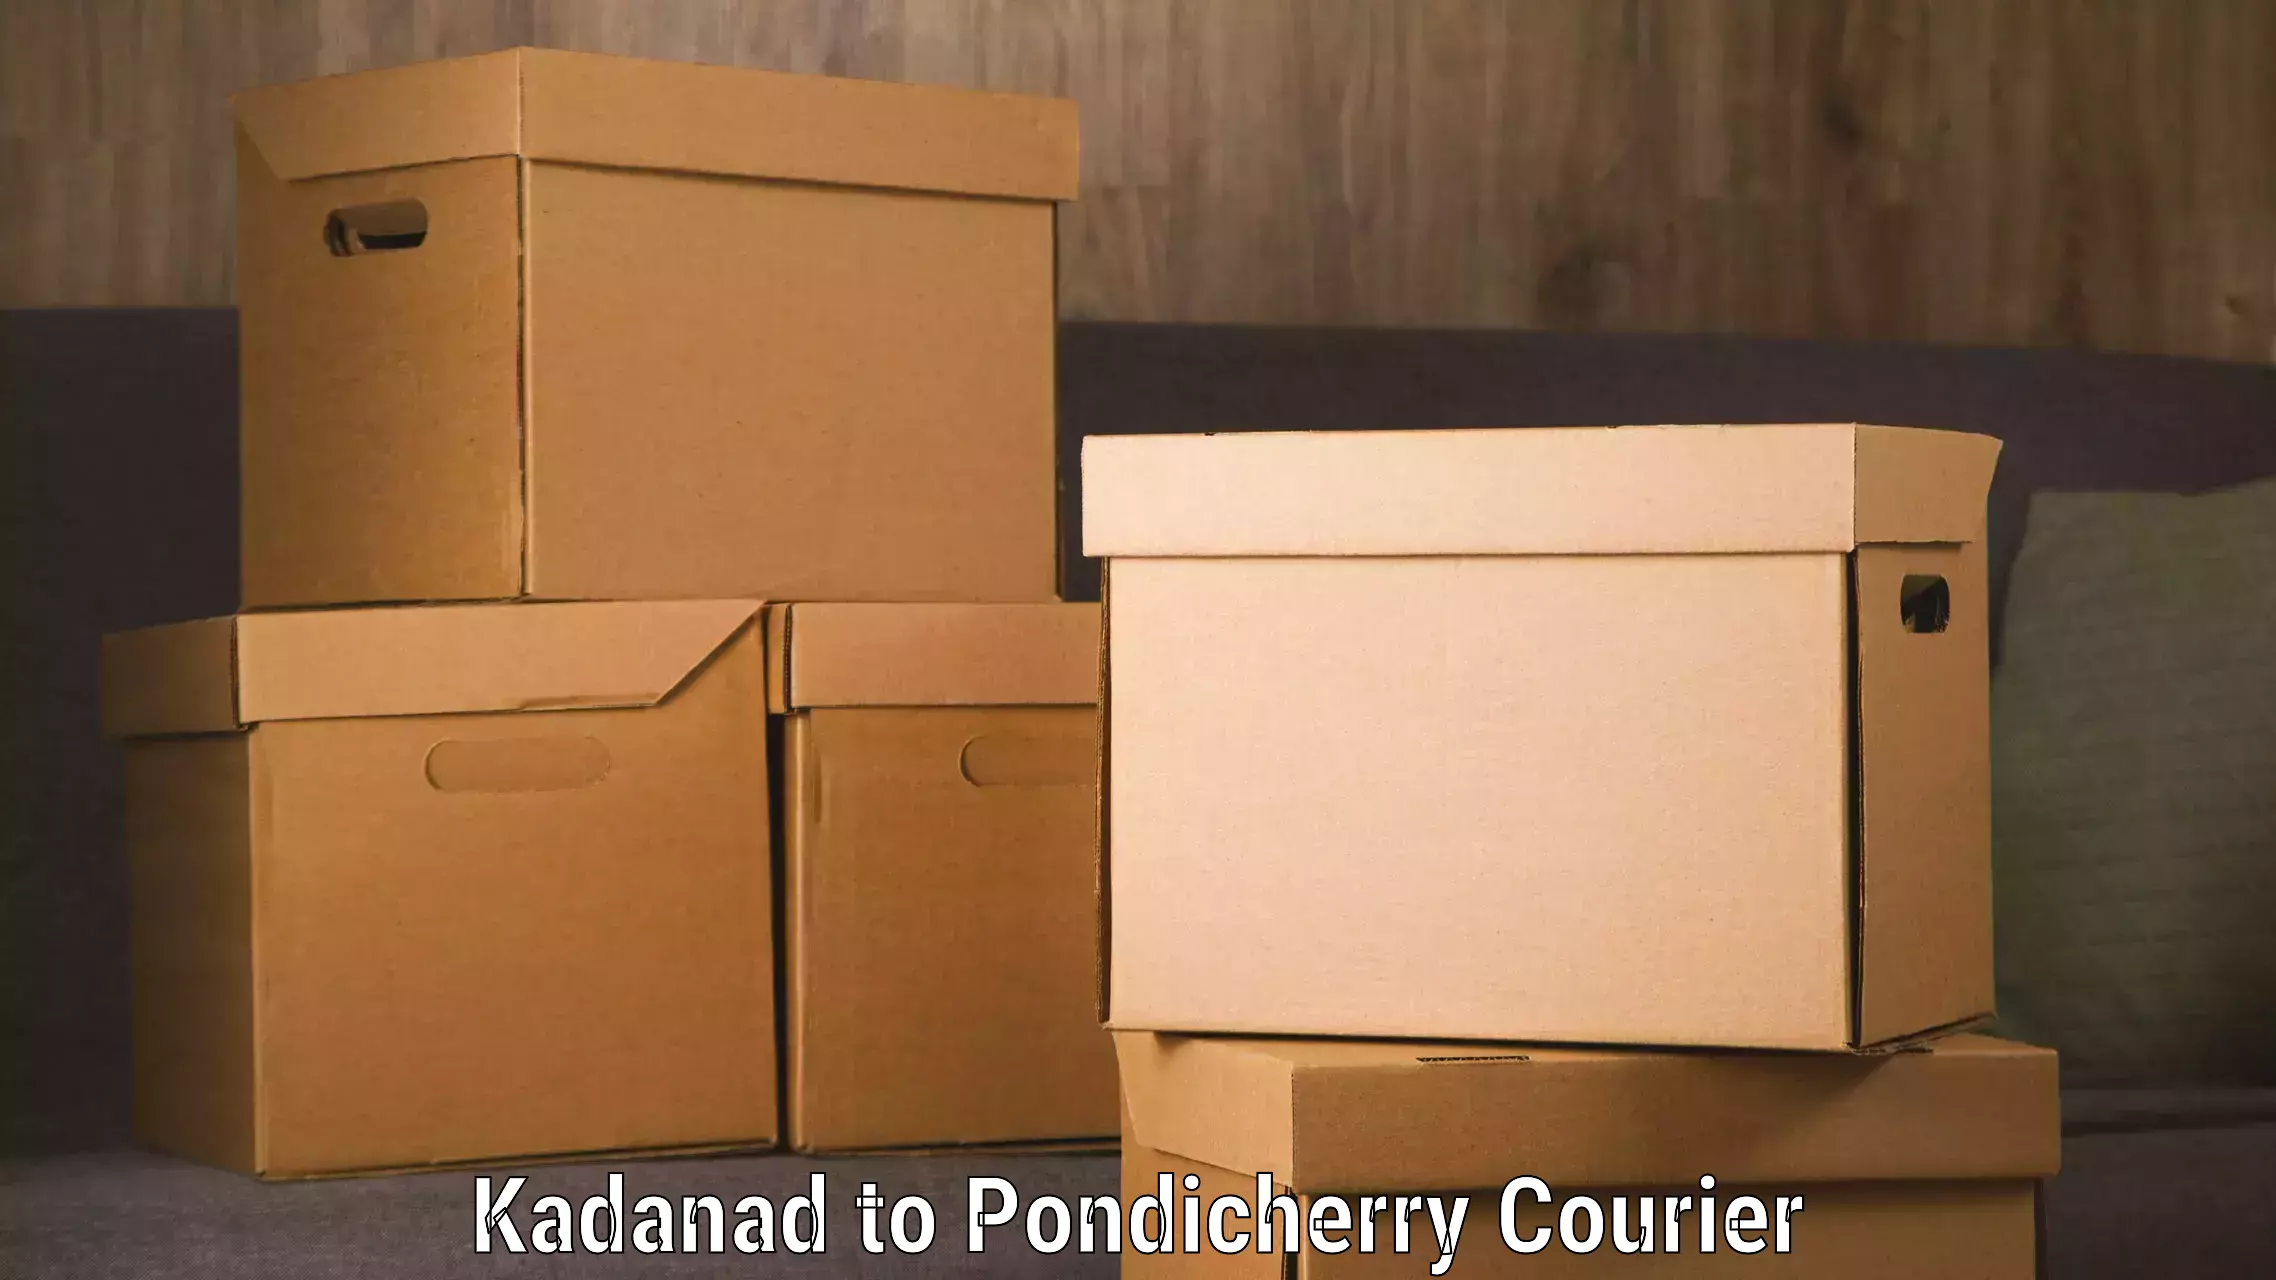 Urgent courier needs Kadanad to Karaikal